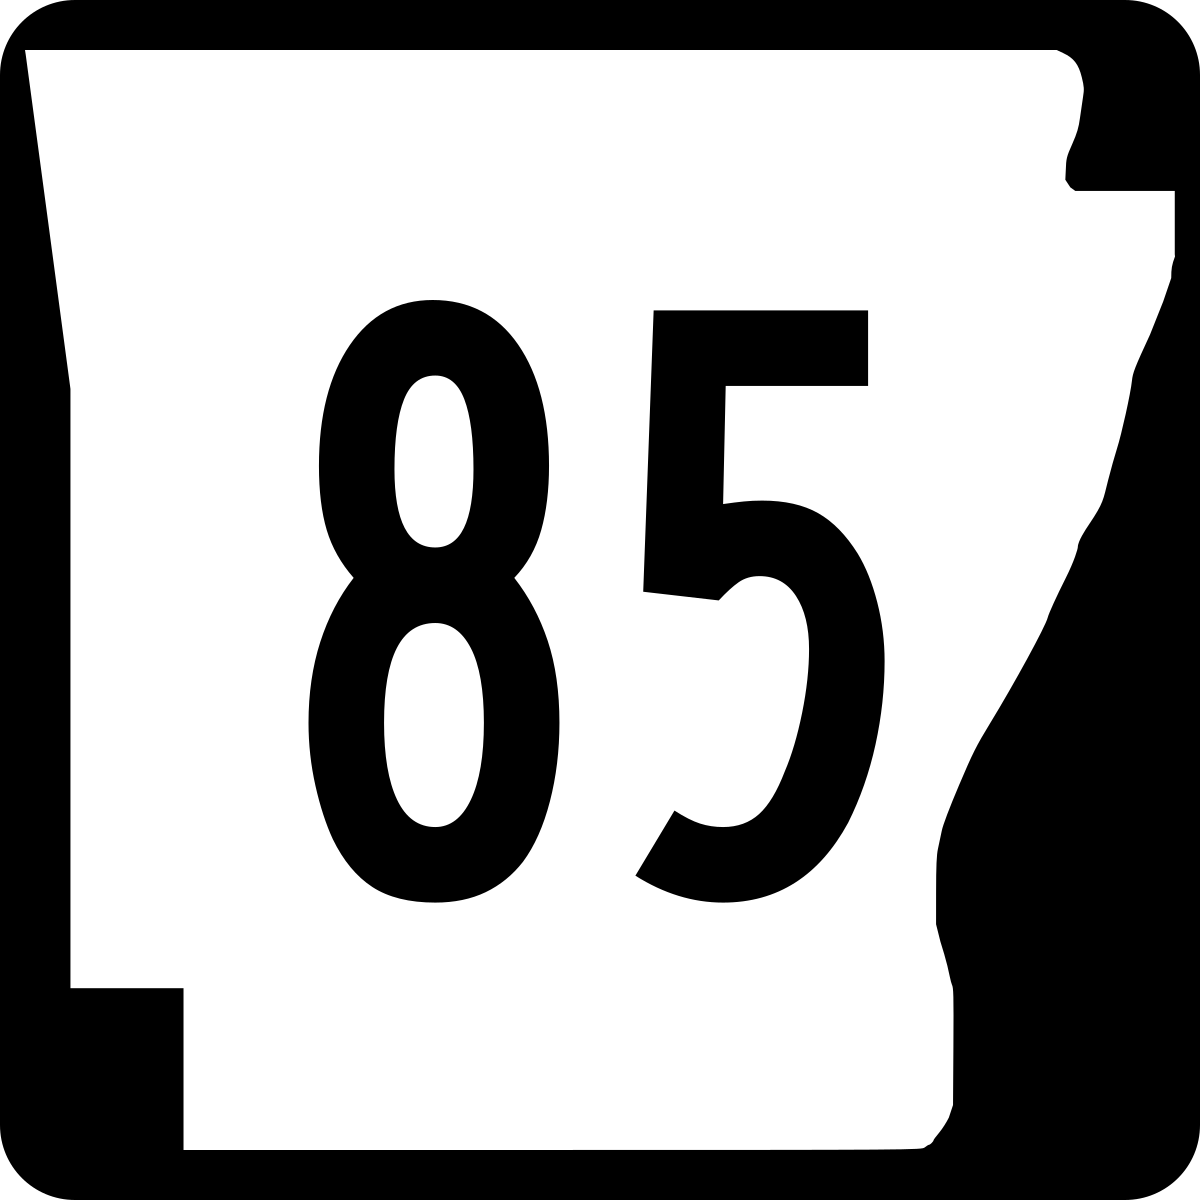 Arkansas Highway 85 - Wikipedia